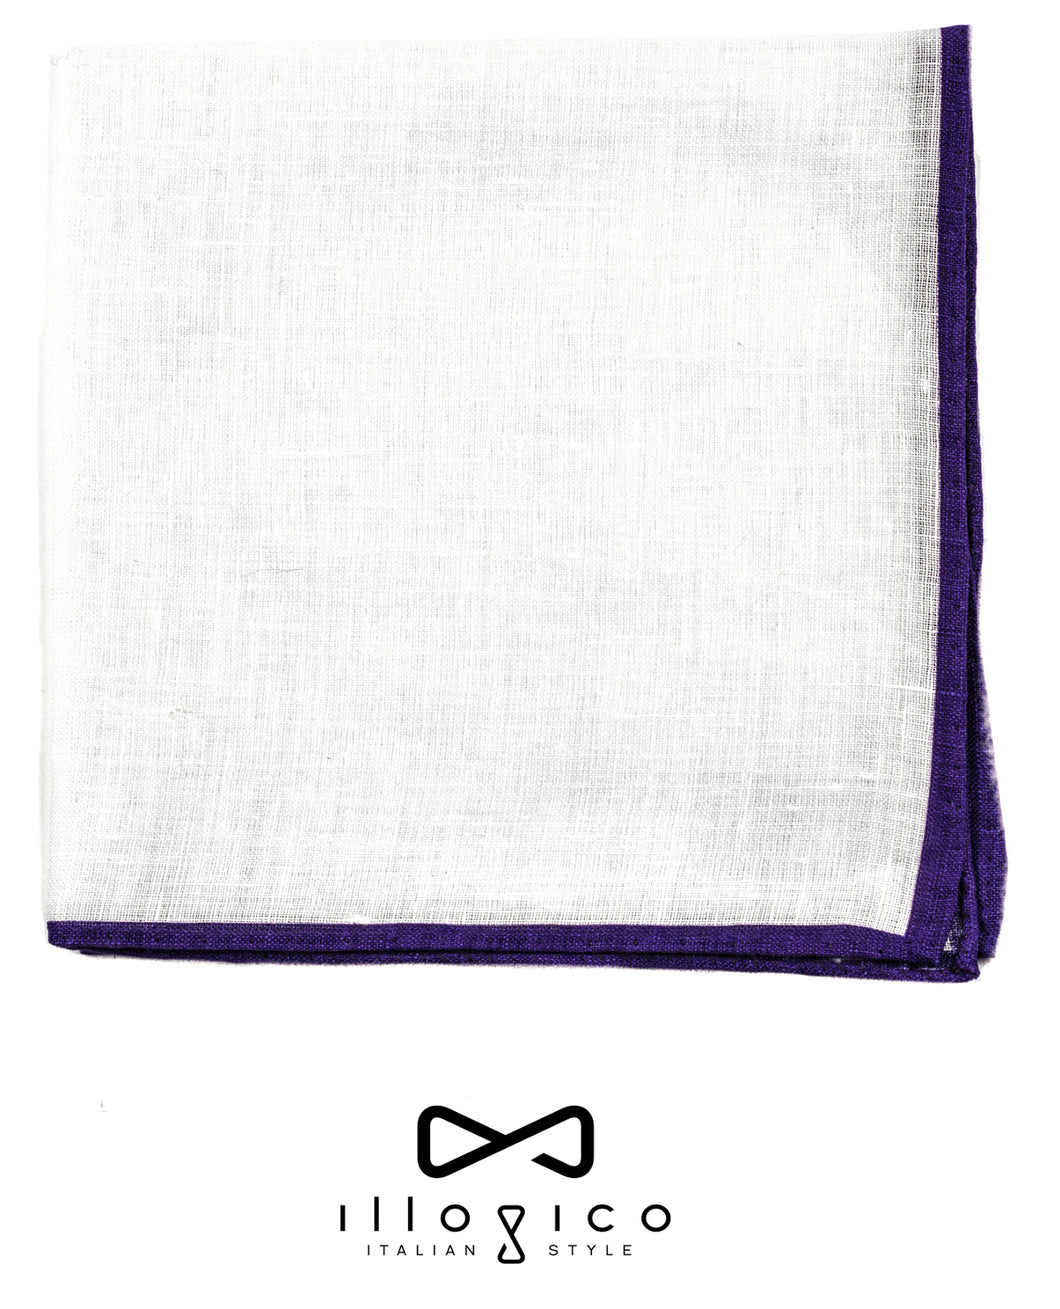 White Linen Pocket Square in Purple Borders